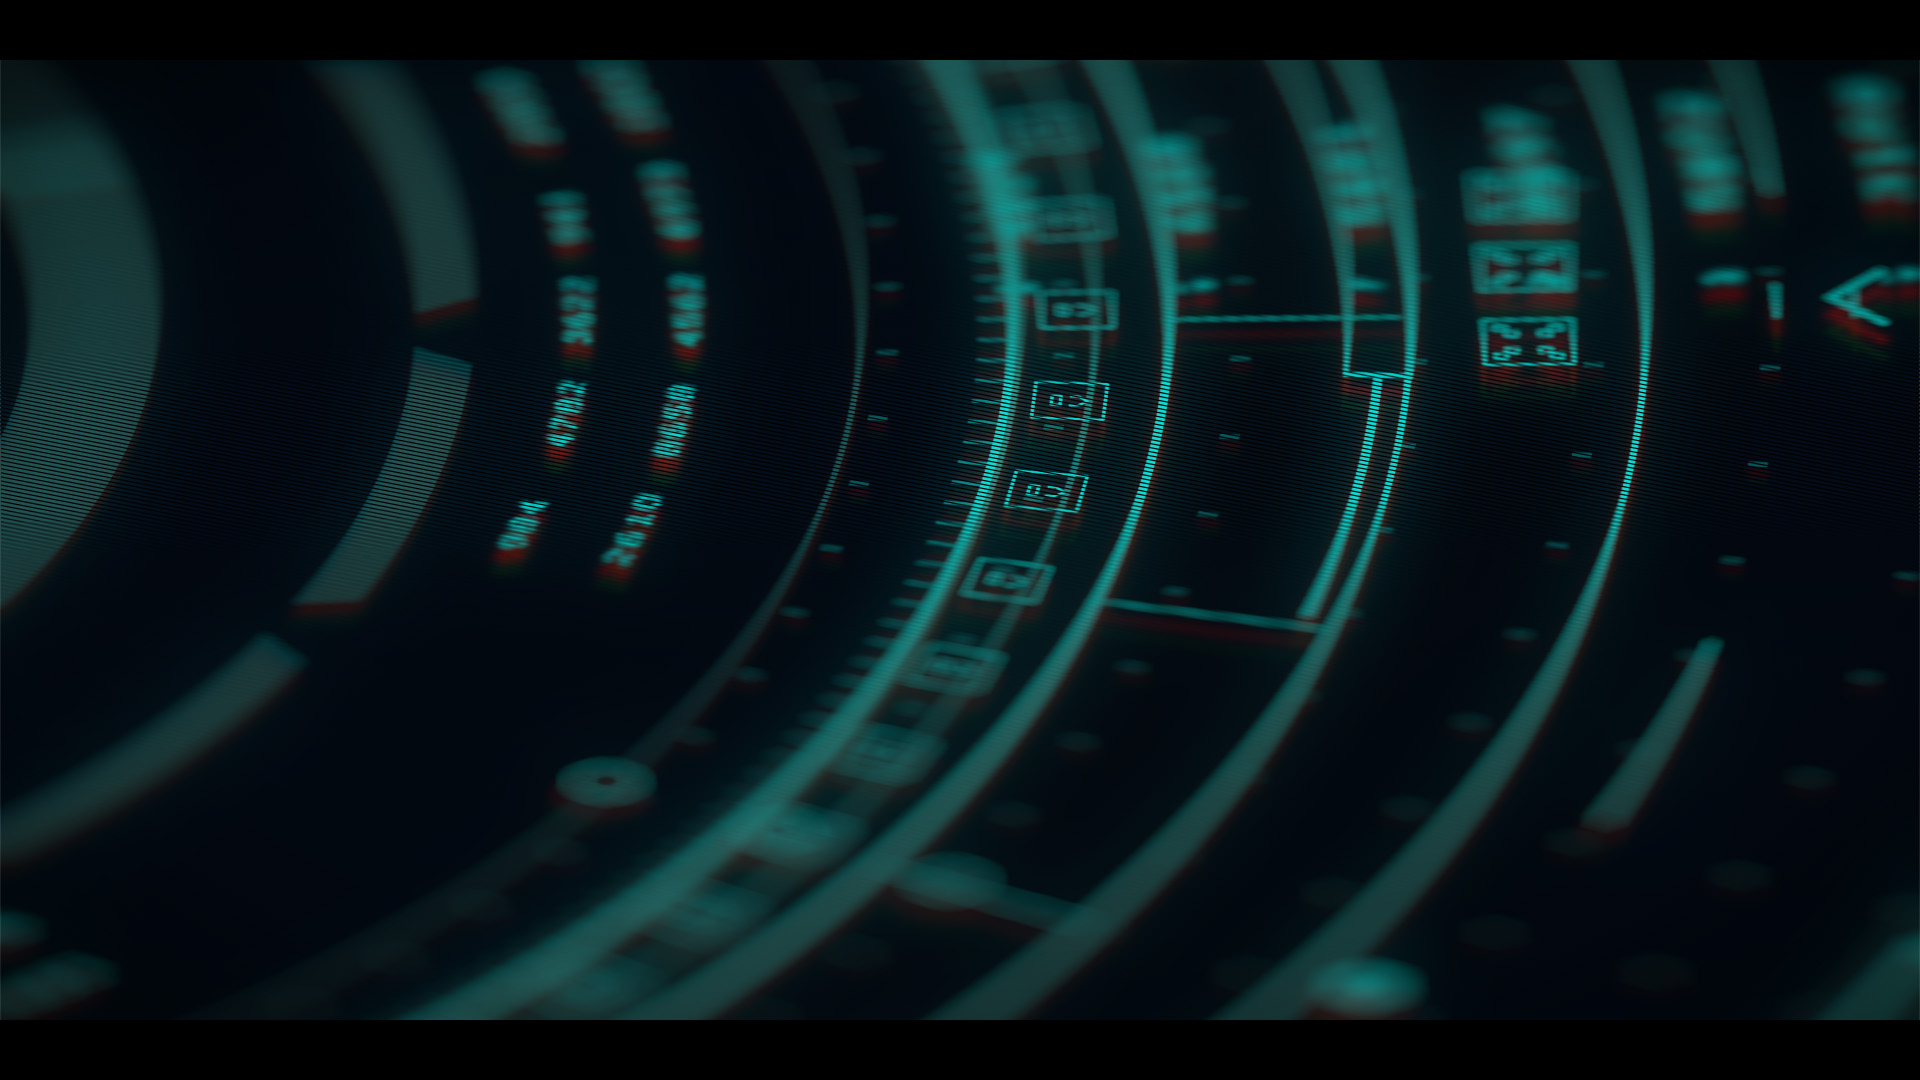 Closeup of a futuristic sci-fi dial